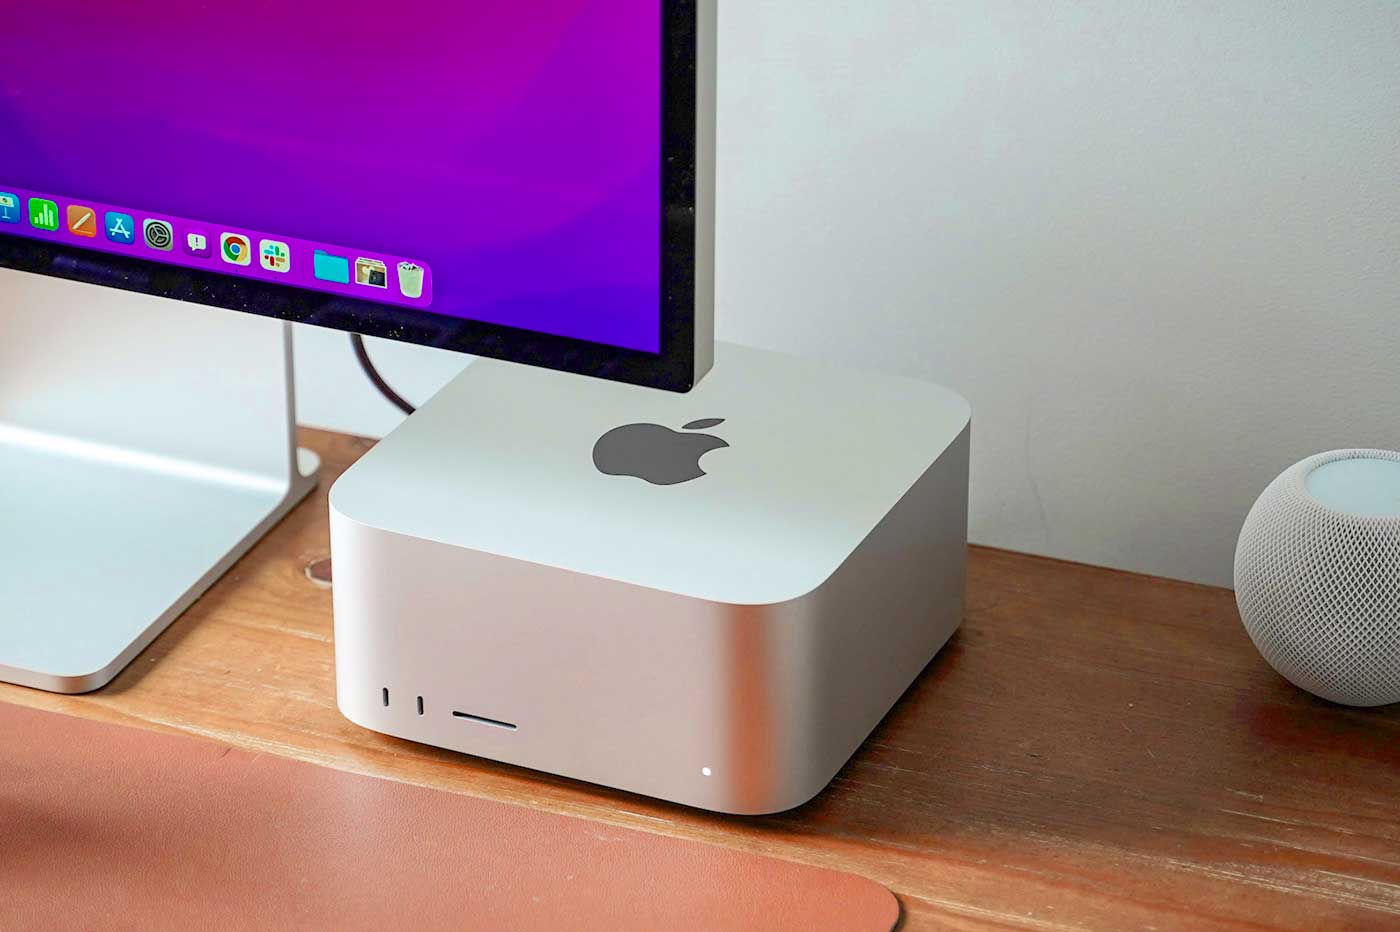 Ordinateur de bureau Pc Apple iMac Pro 27 pouces de décoration